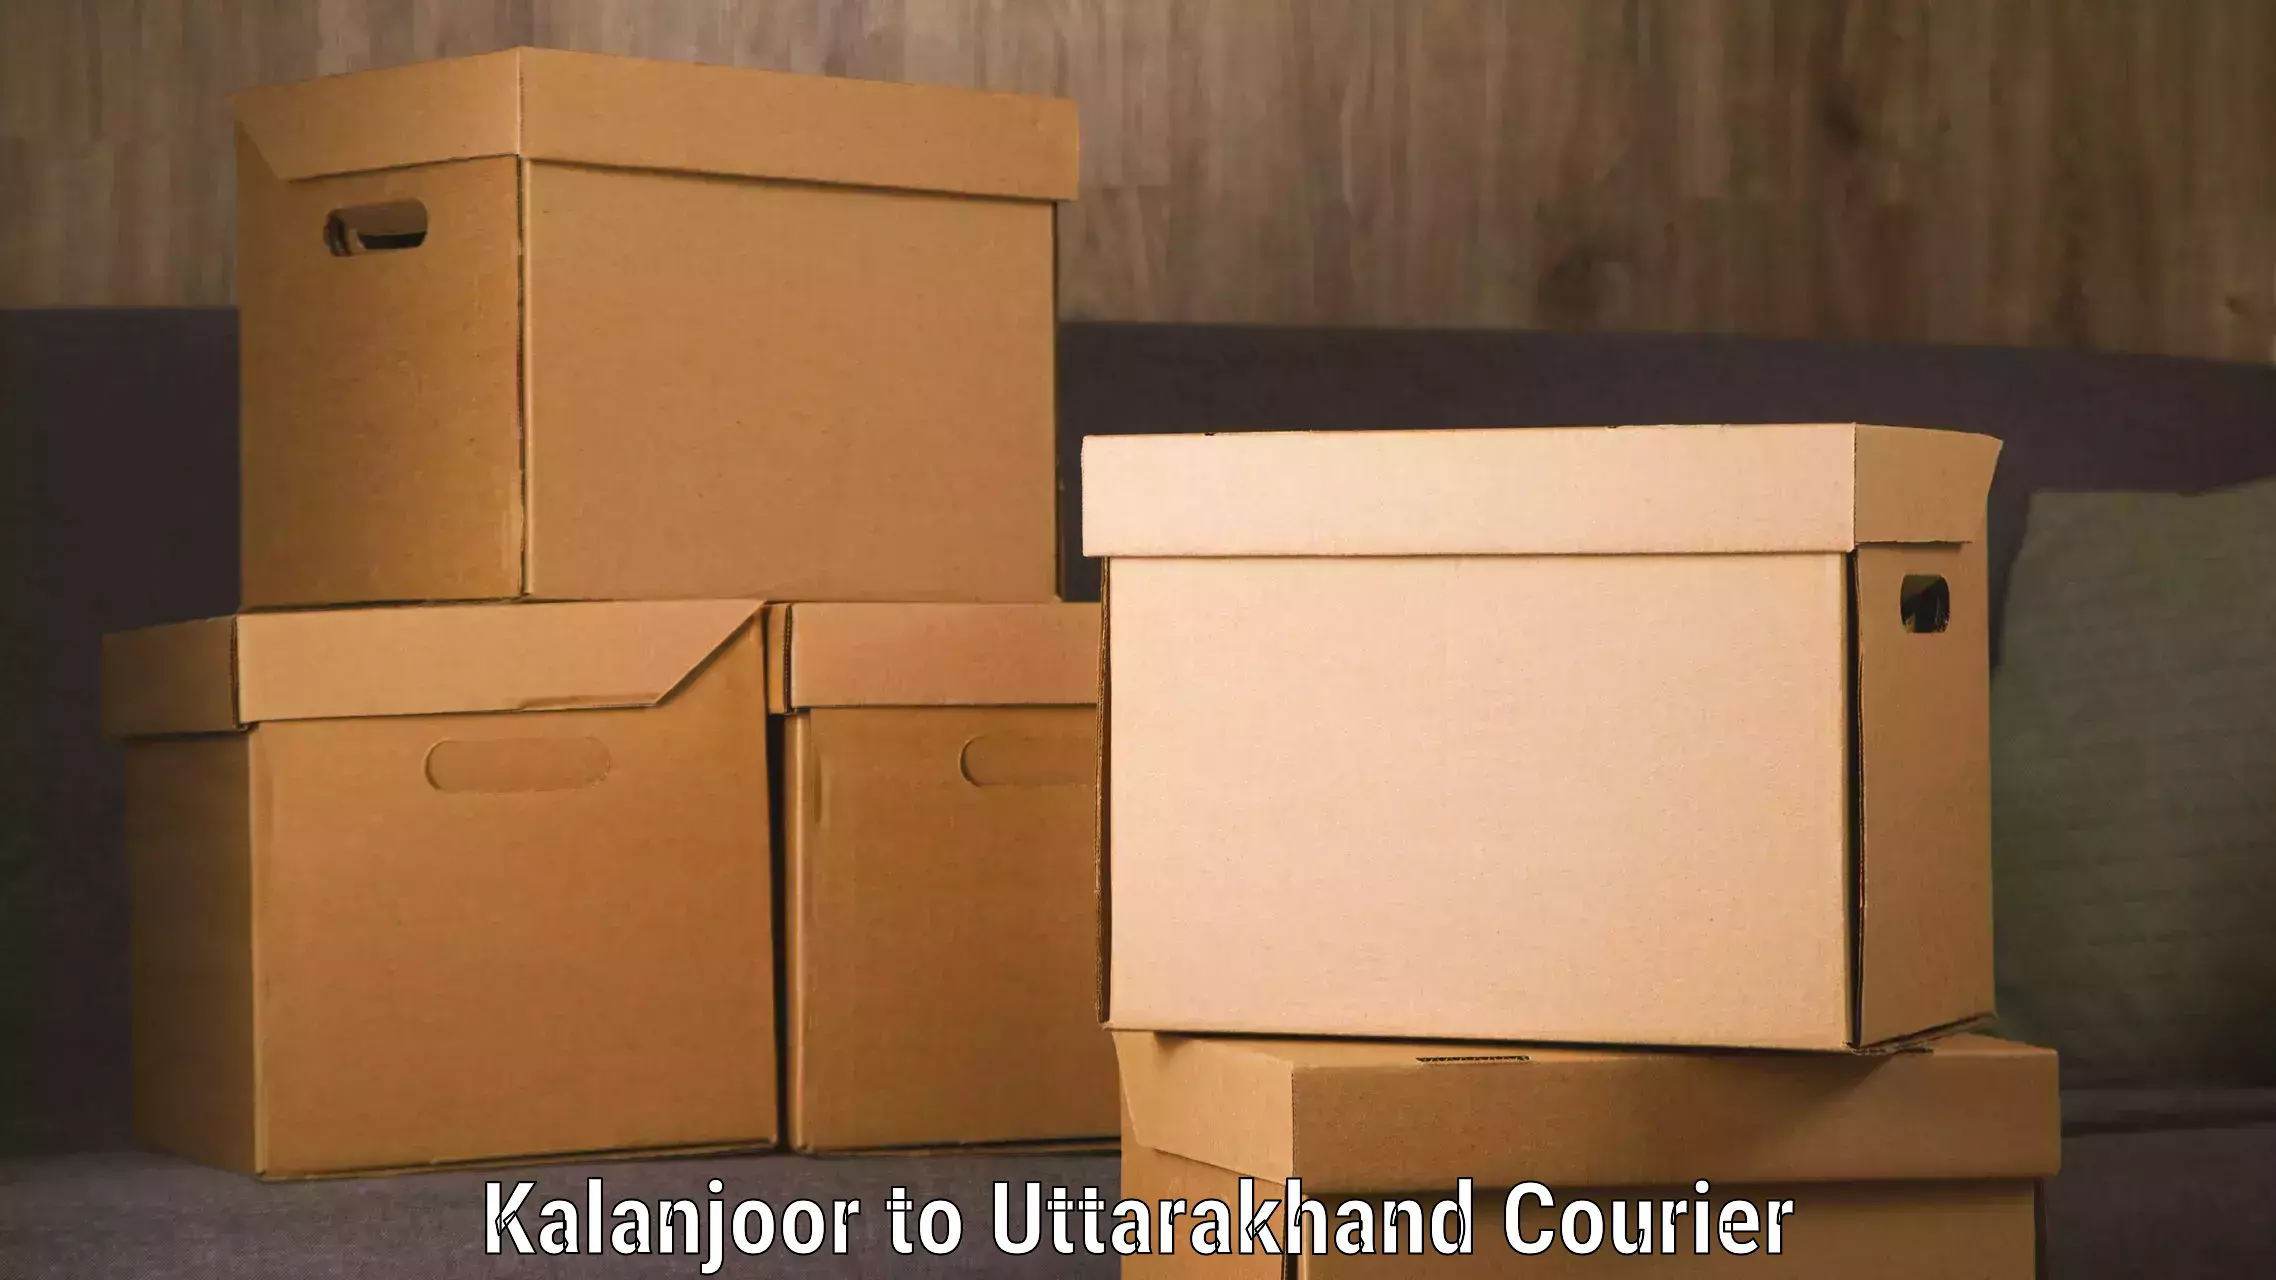 Special handling courier Kalanjoor to IIT Roorkee